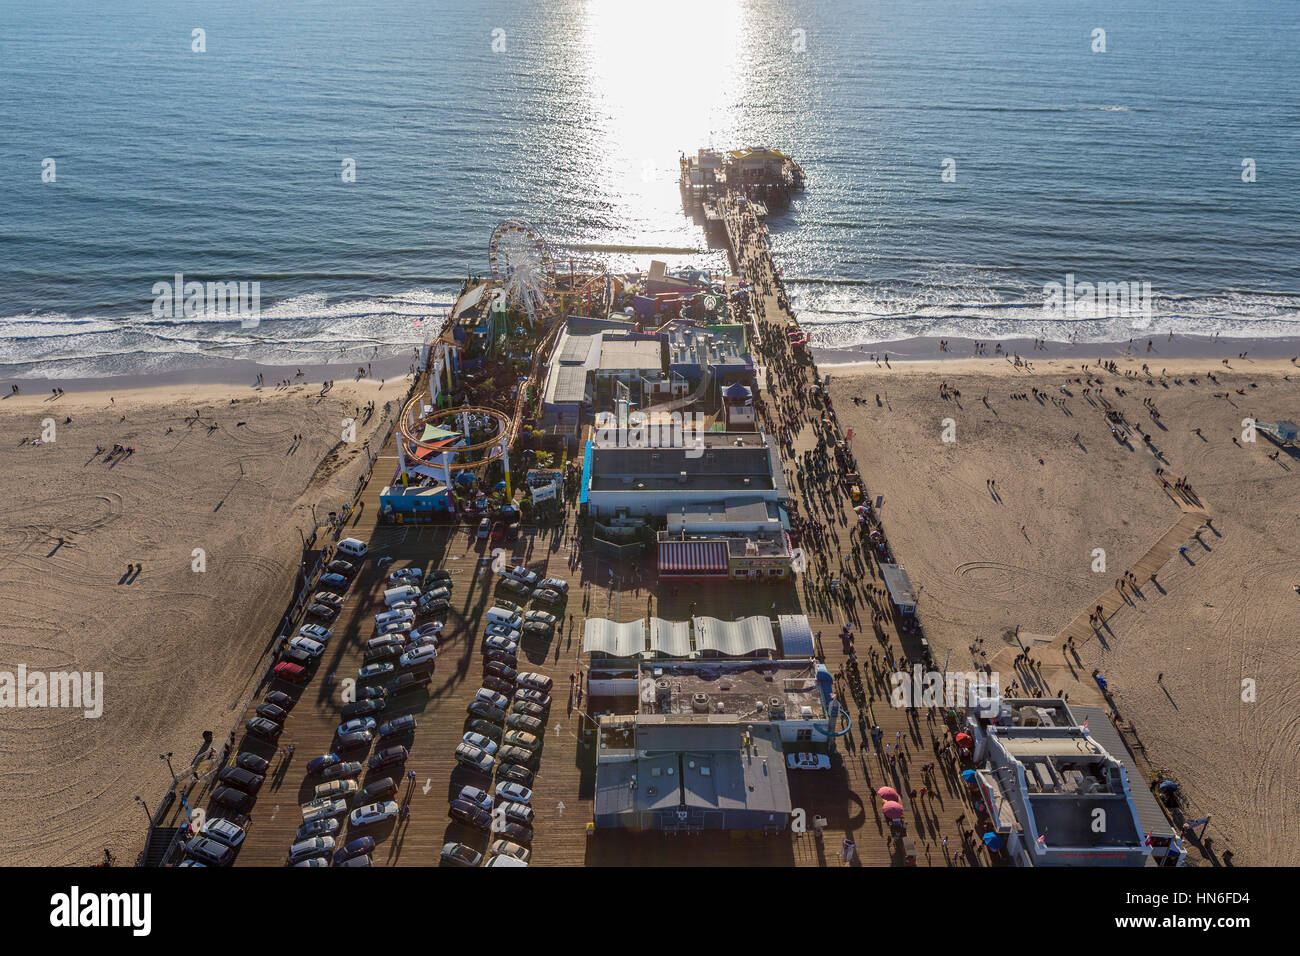 Santa Monica, Californie, USA - 17 décembre 2016 : Fin de l'après-midi vue aérienne de Santa Monica Pier et l'océan Pacifique en Californie du Sud. Banque D'Images